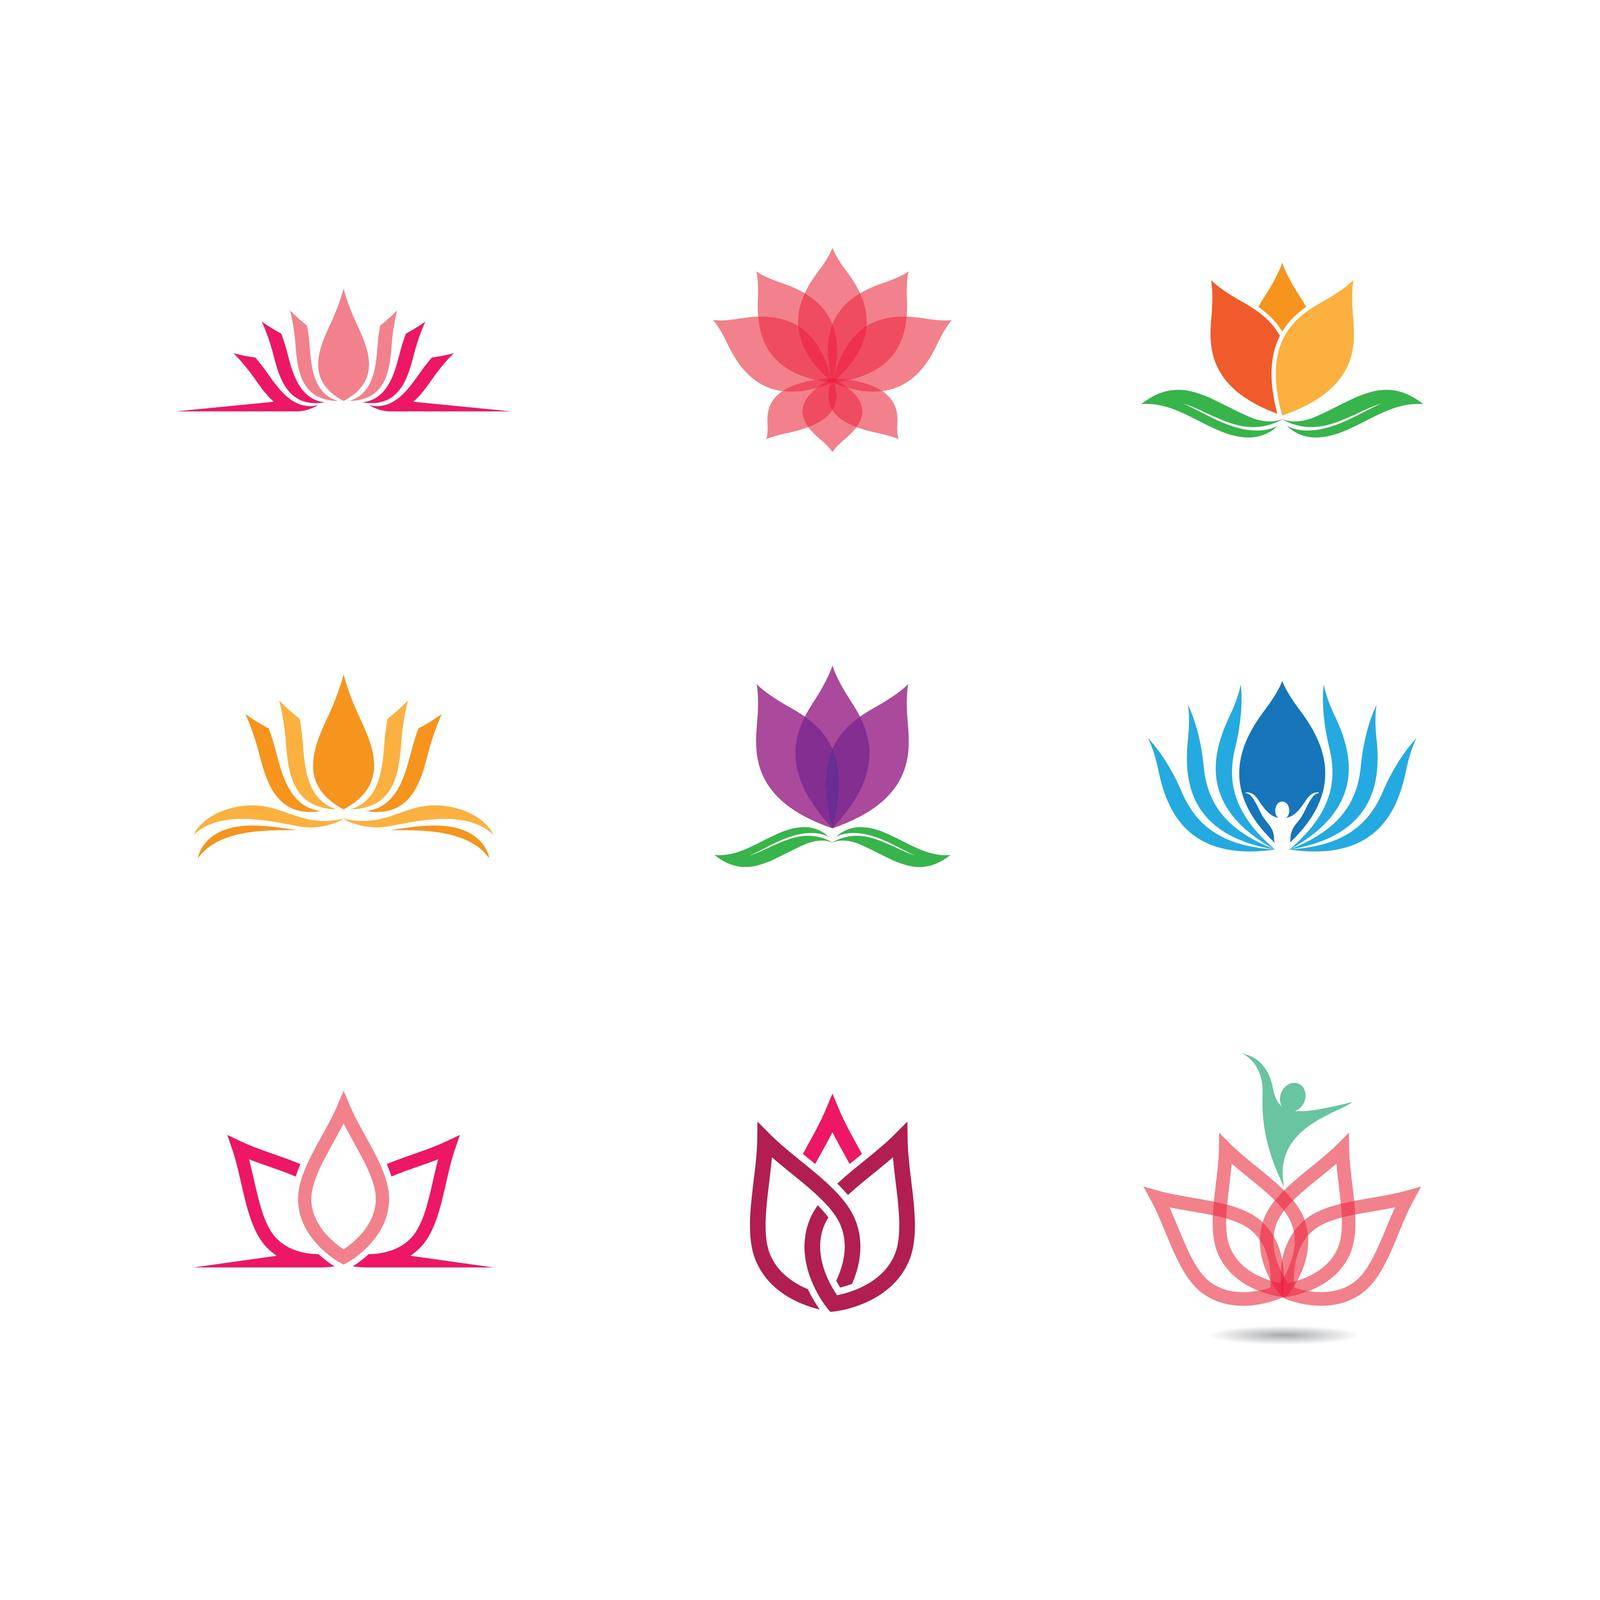 Lotus symbol vector icon by Fat17